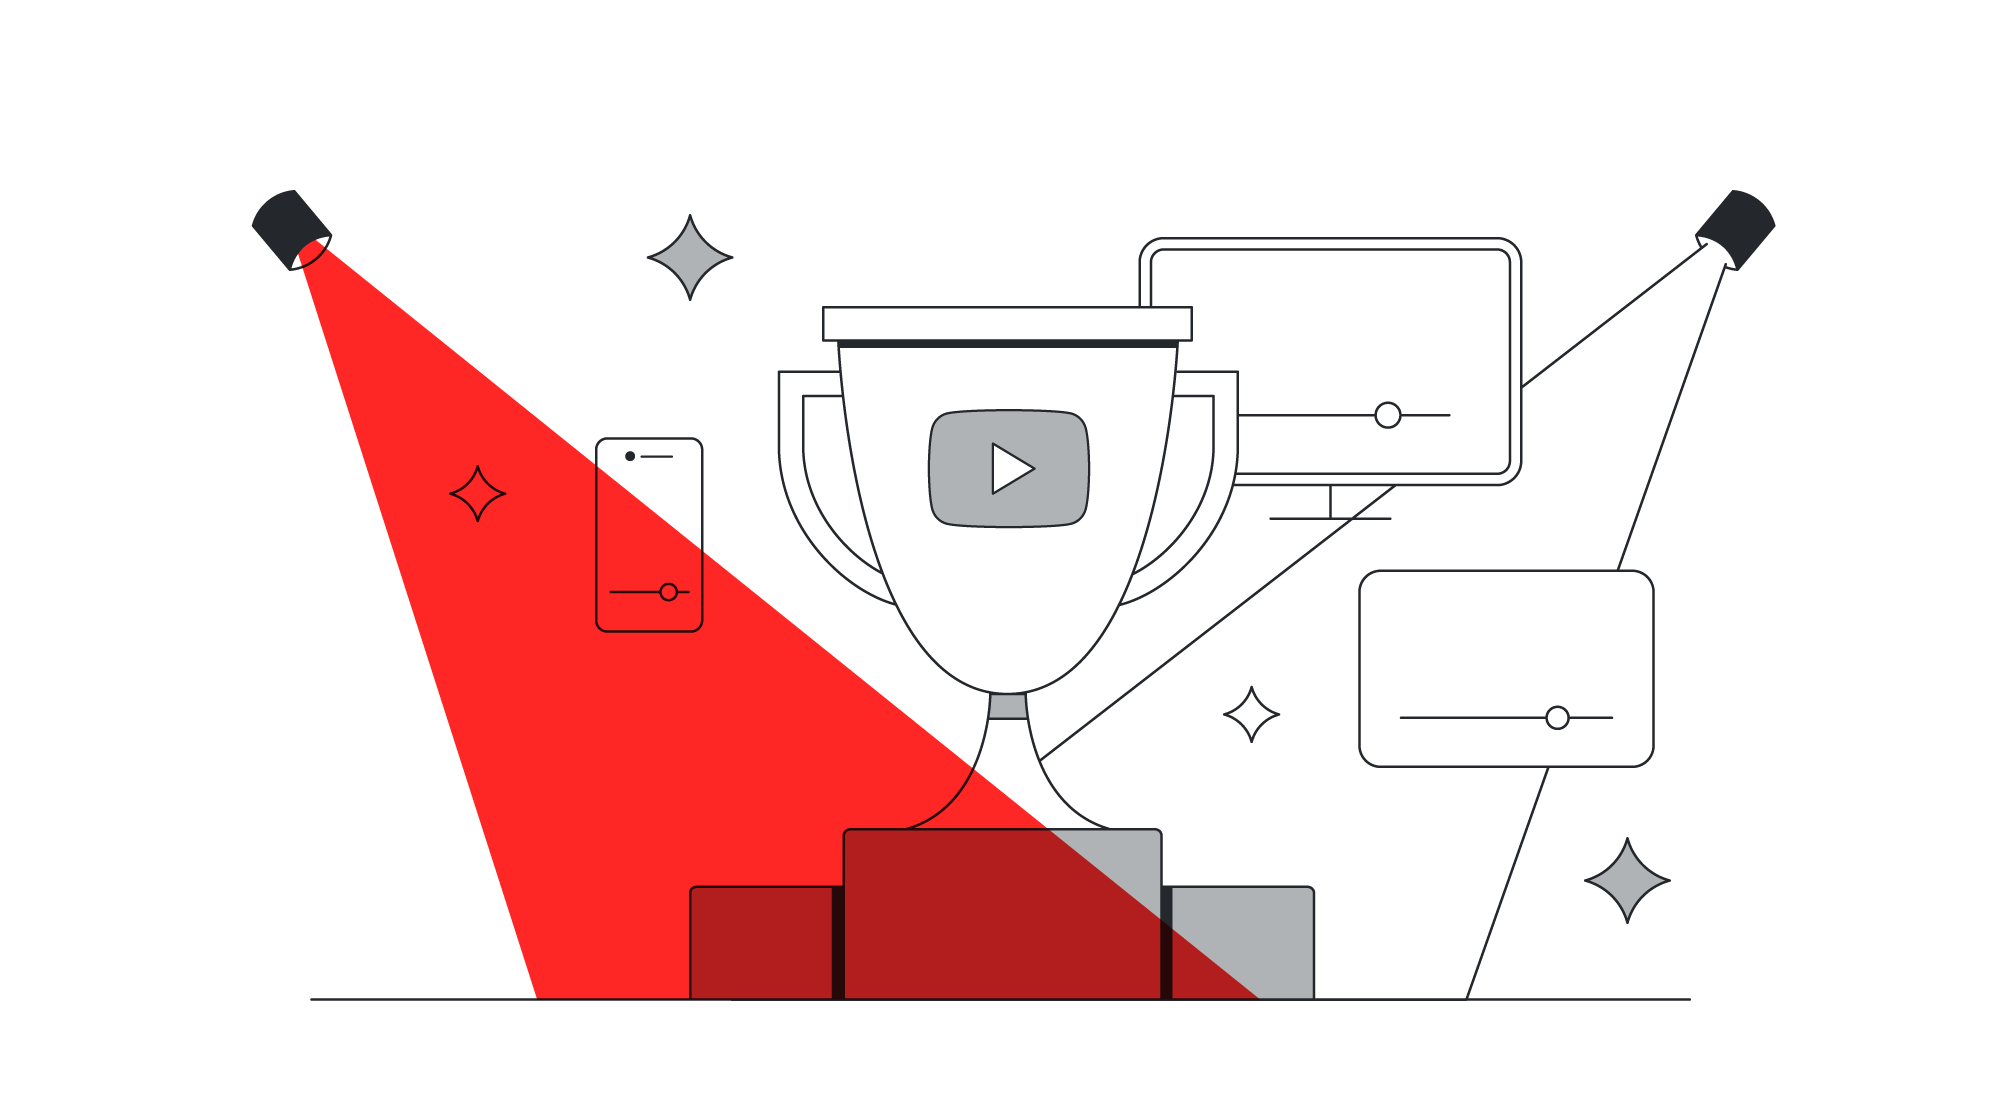 No centro da imagem, um troféu no alto do pódio traz o símbolo do YouTube. Ele é iluminado por dois refletores, um com luz branca e outro com luz vermelha. Ao redor, diferentes players: celular, tv e computador.